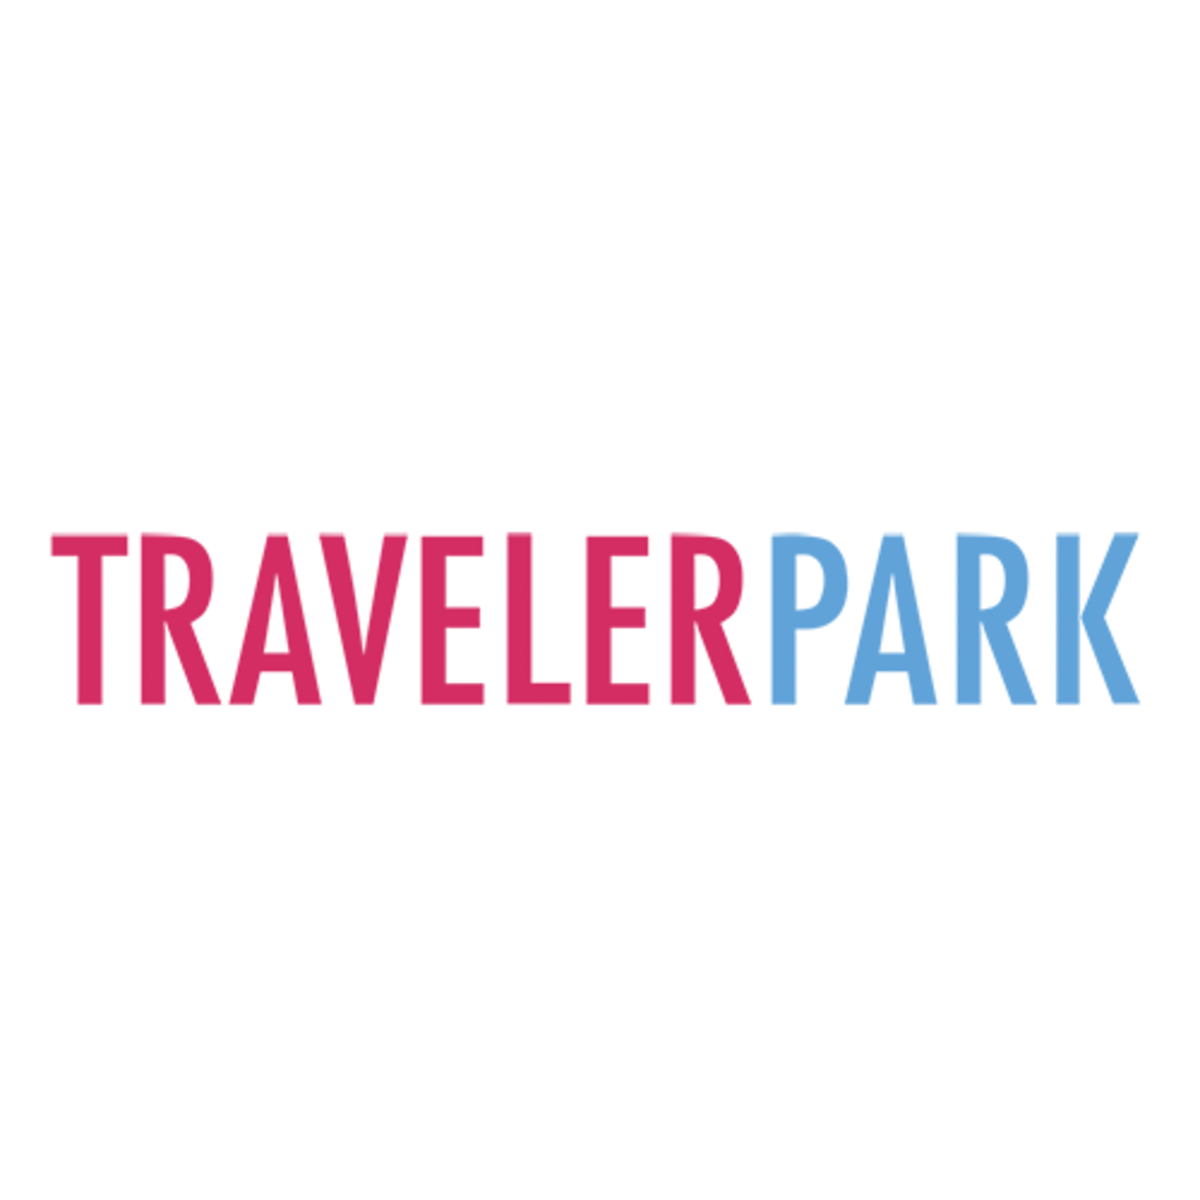 (c) Travelerpark.com